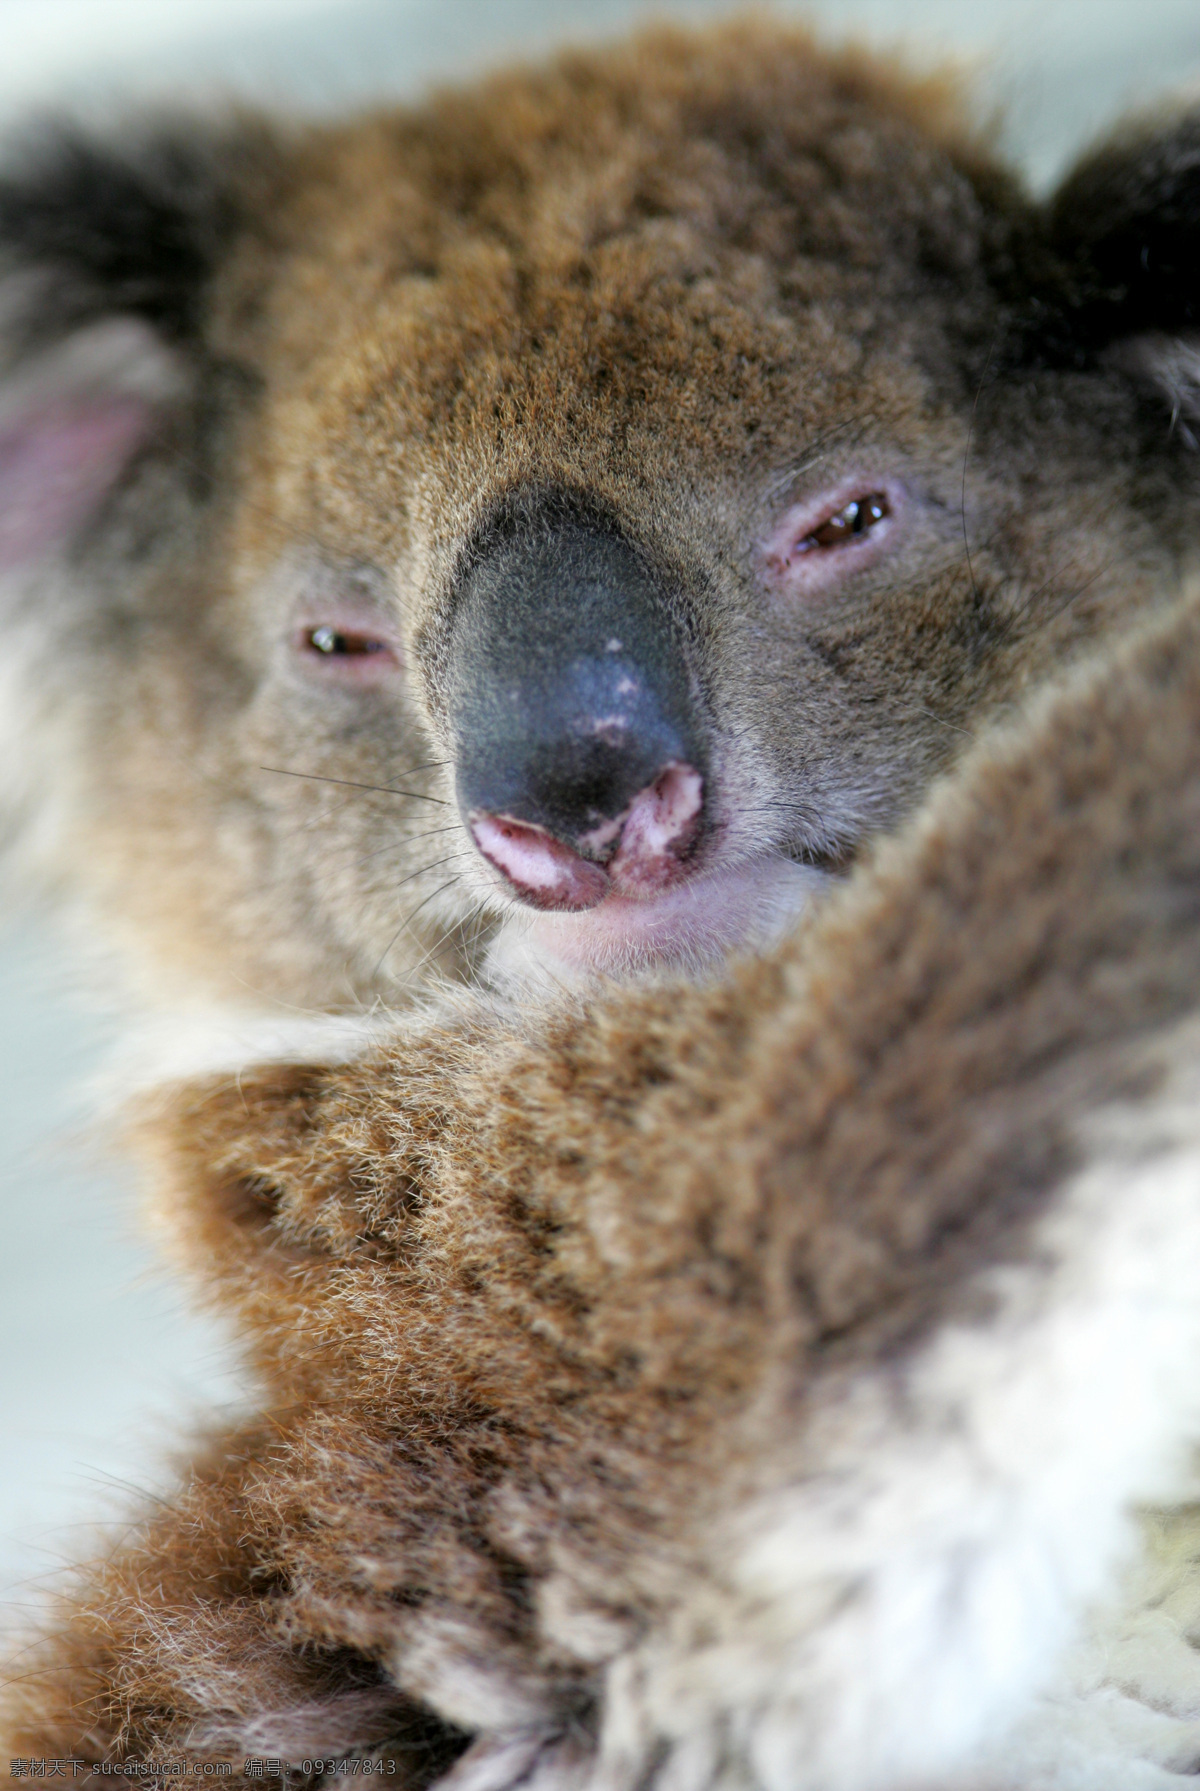 考拉特写 考拉 野生 珍贵 保护 动物 小熊 树懒 澳大利亚动物 野生动物 生物世界